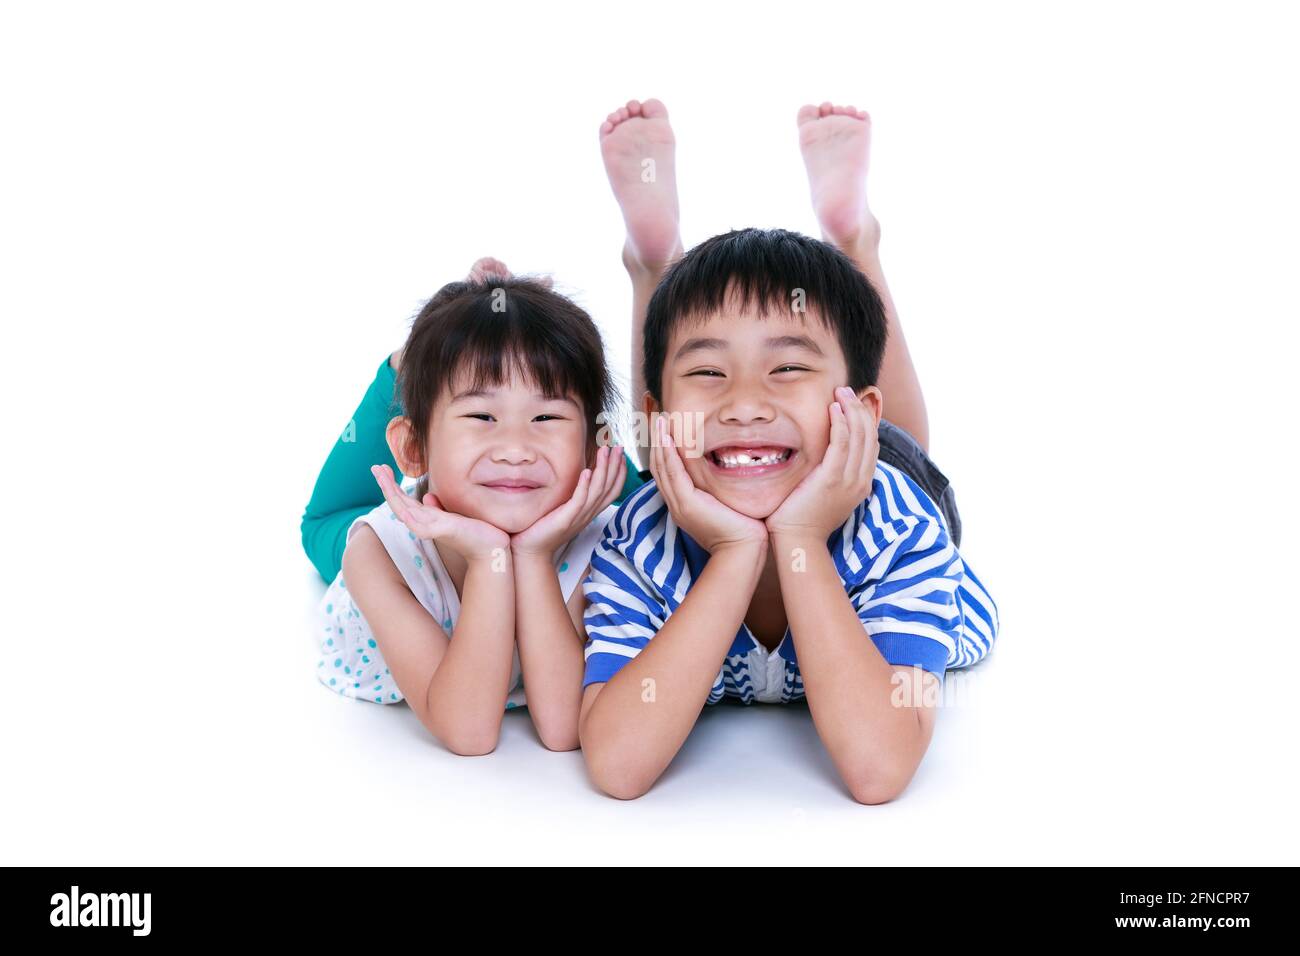 Enfants asiatiques couchés sur le sol. Les enfants chinois se sont contentés et souriants, isolés sur fond blanc. Conceptuel de l'amour des frères et sœurs. Happ Banque D'Images